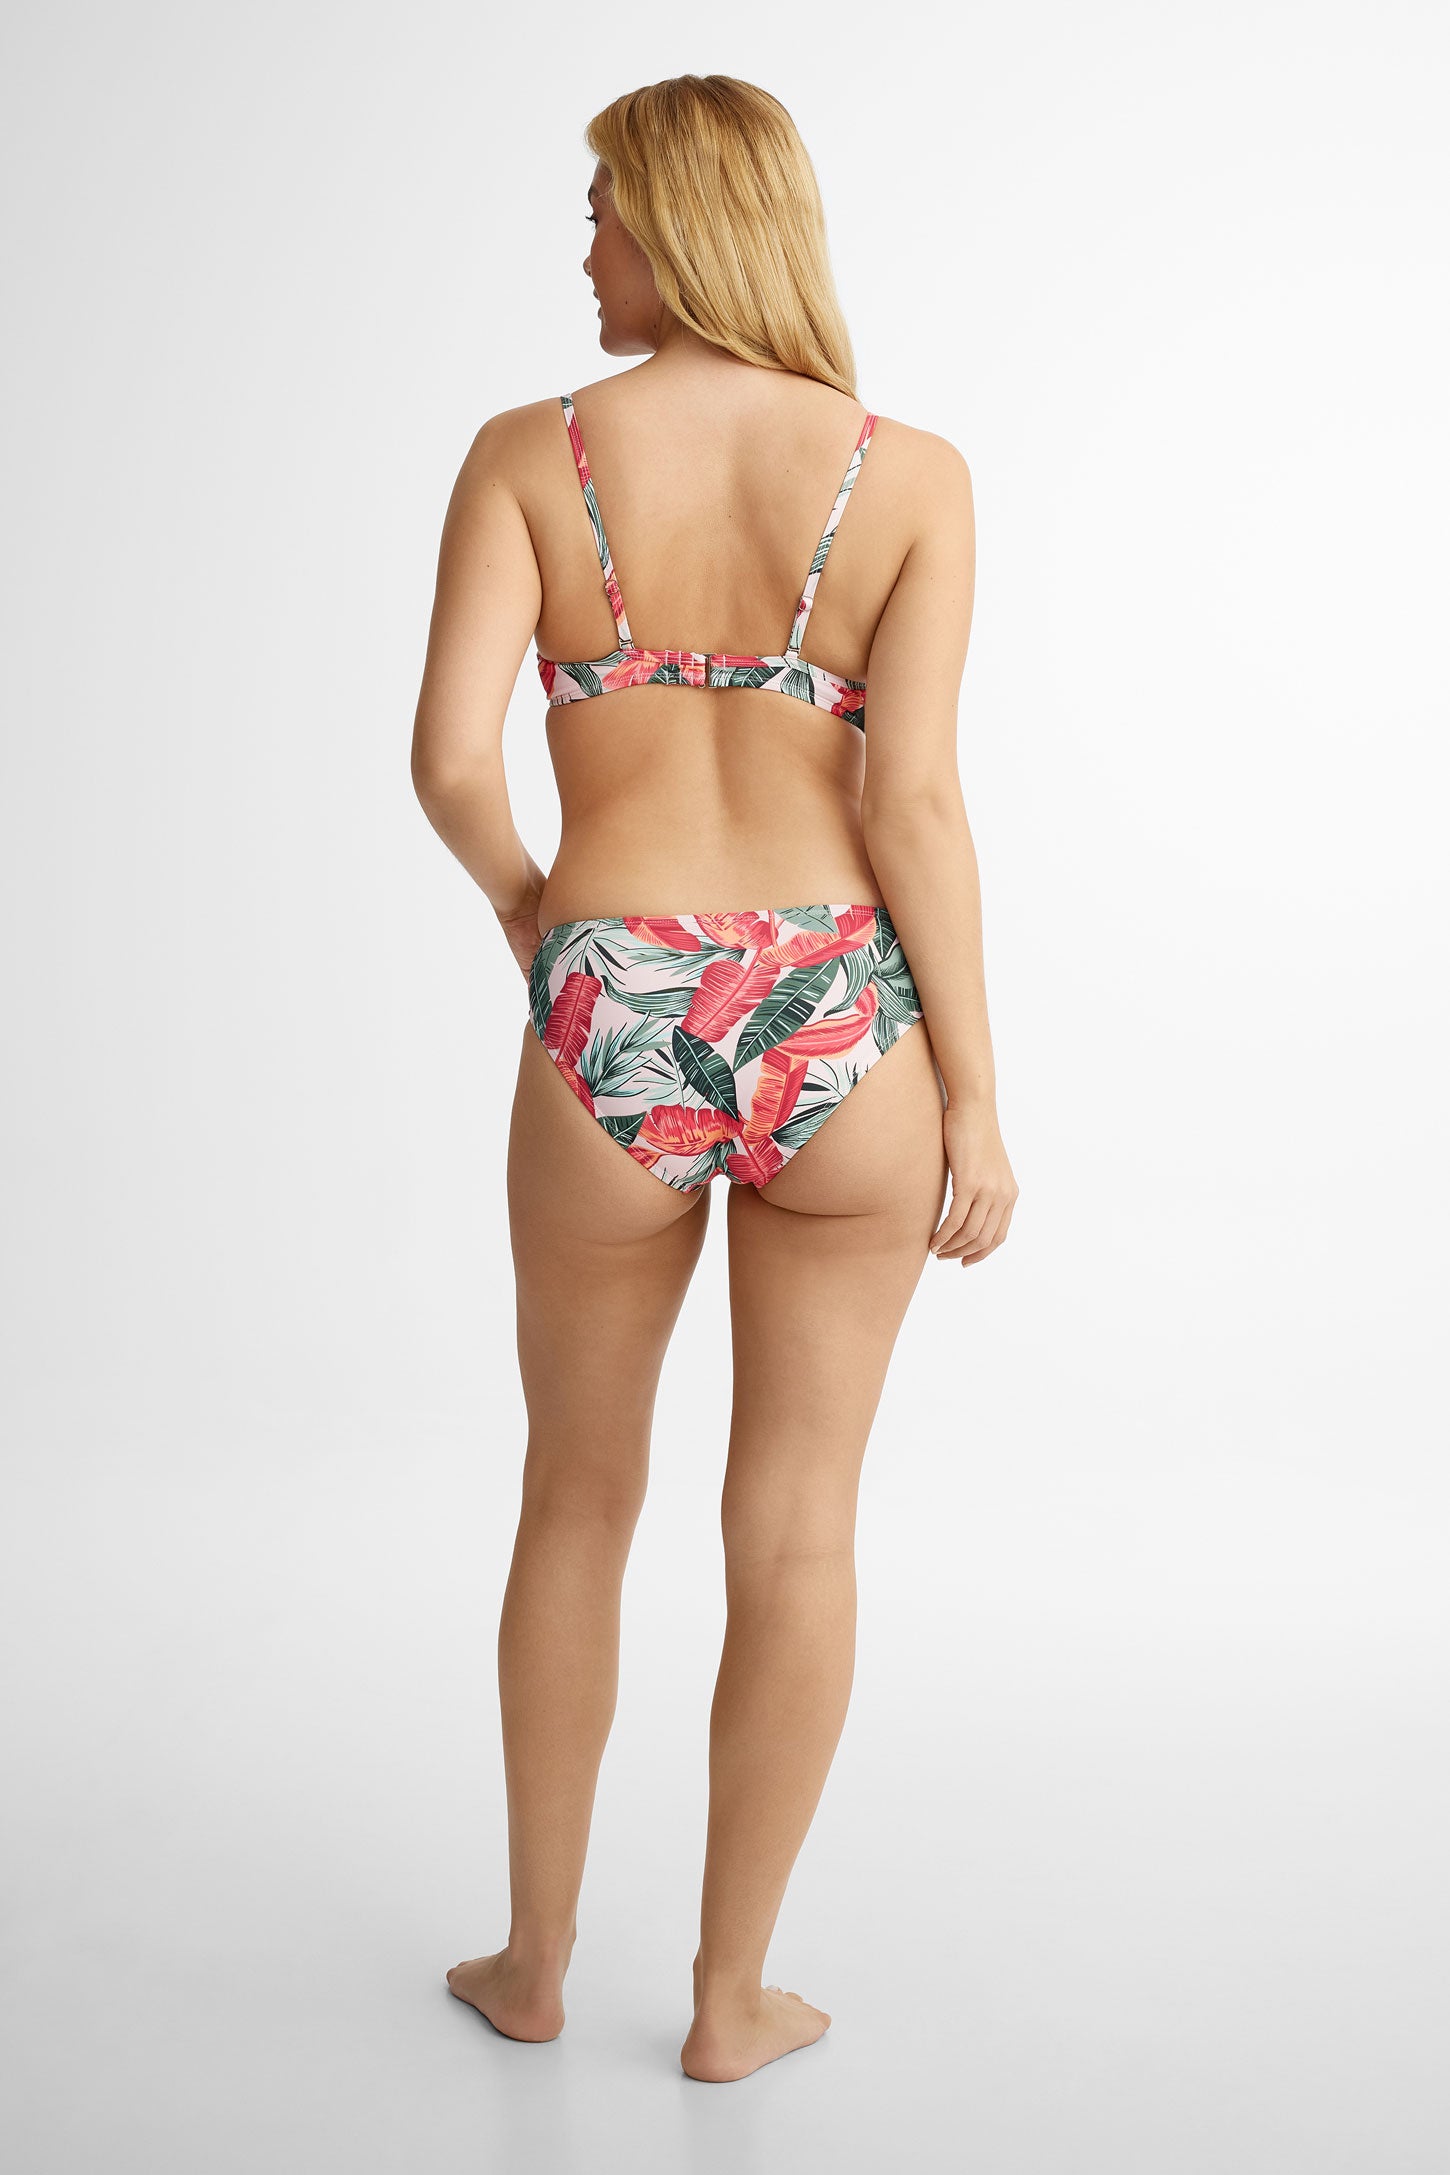 Haut maillot de bain Bikini Push-up, 2/40$ - Femme && ROSE MULTI